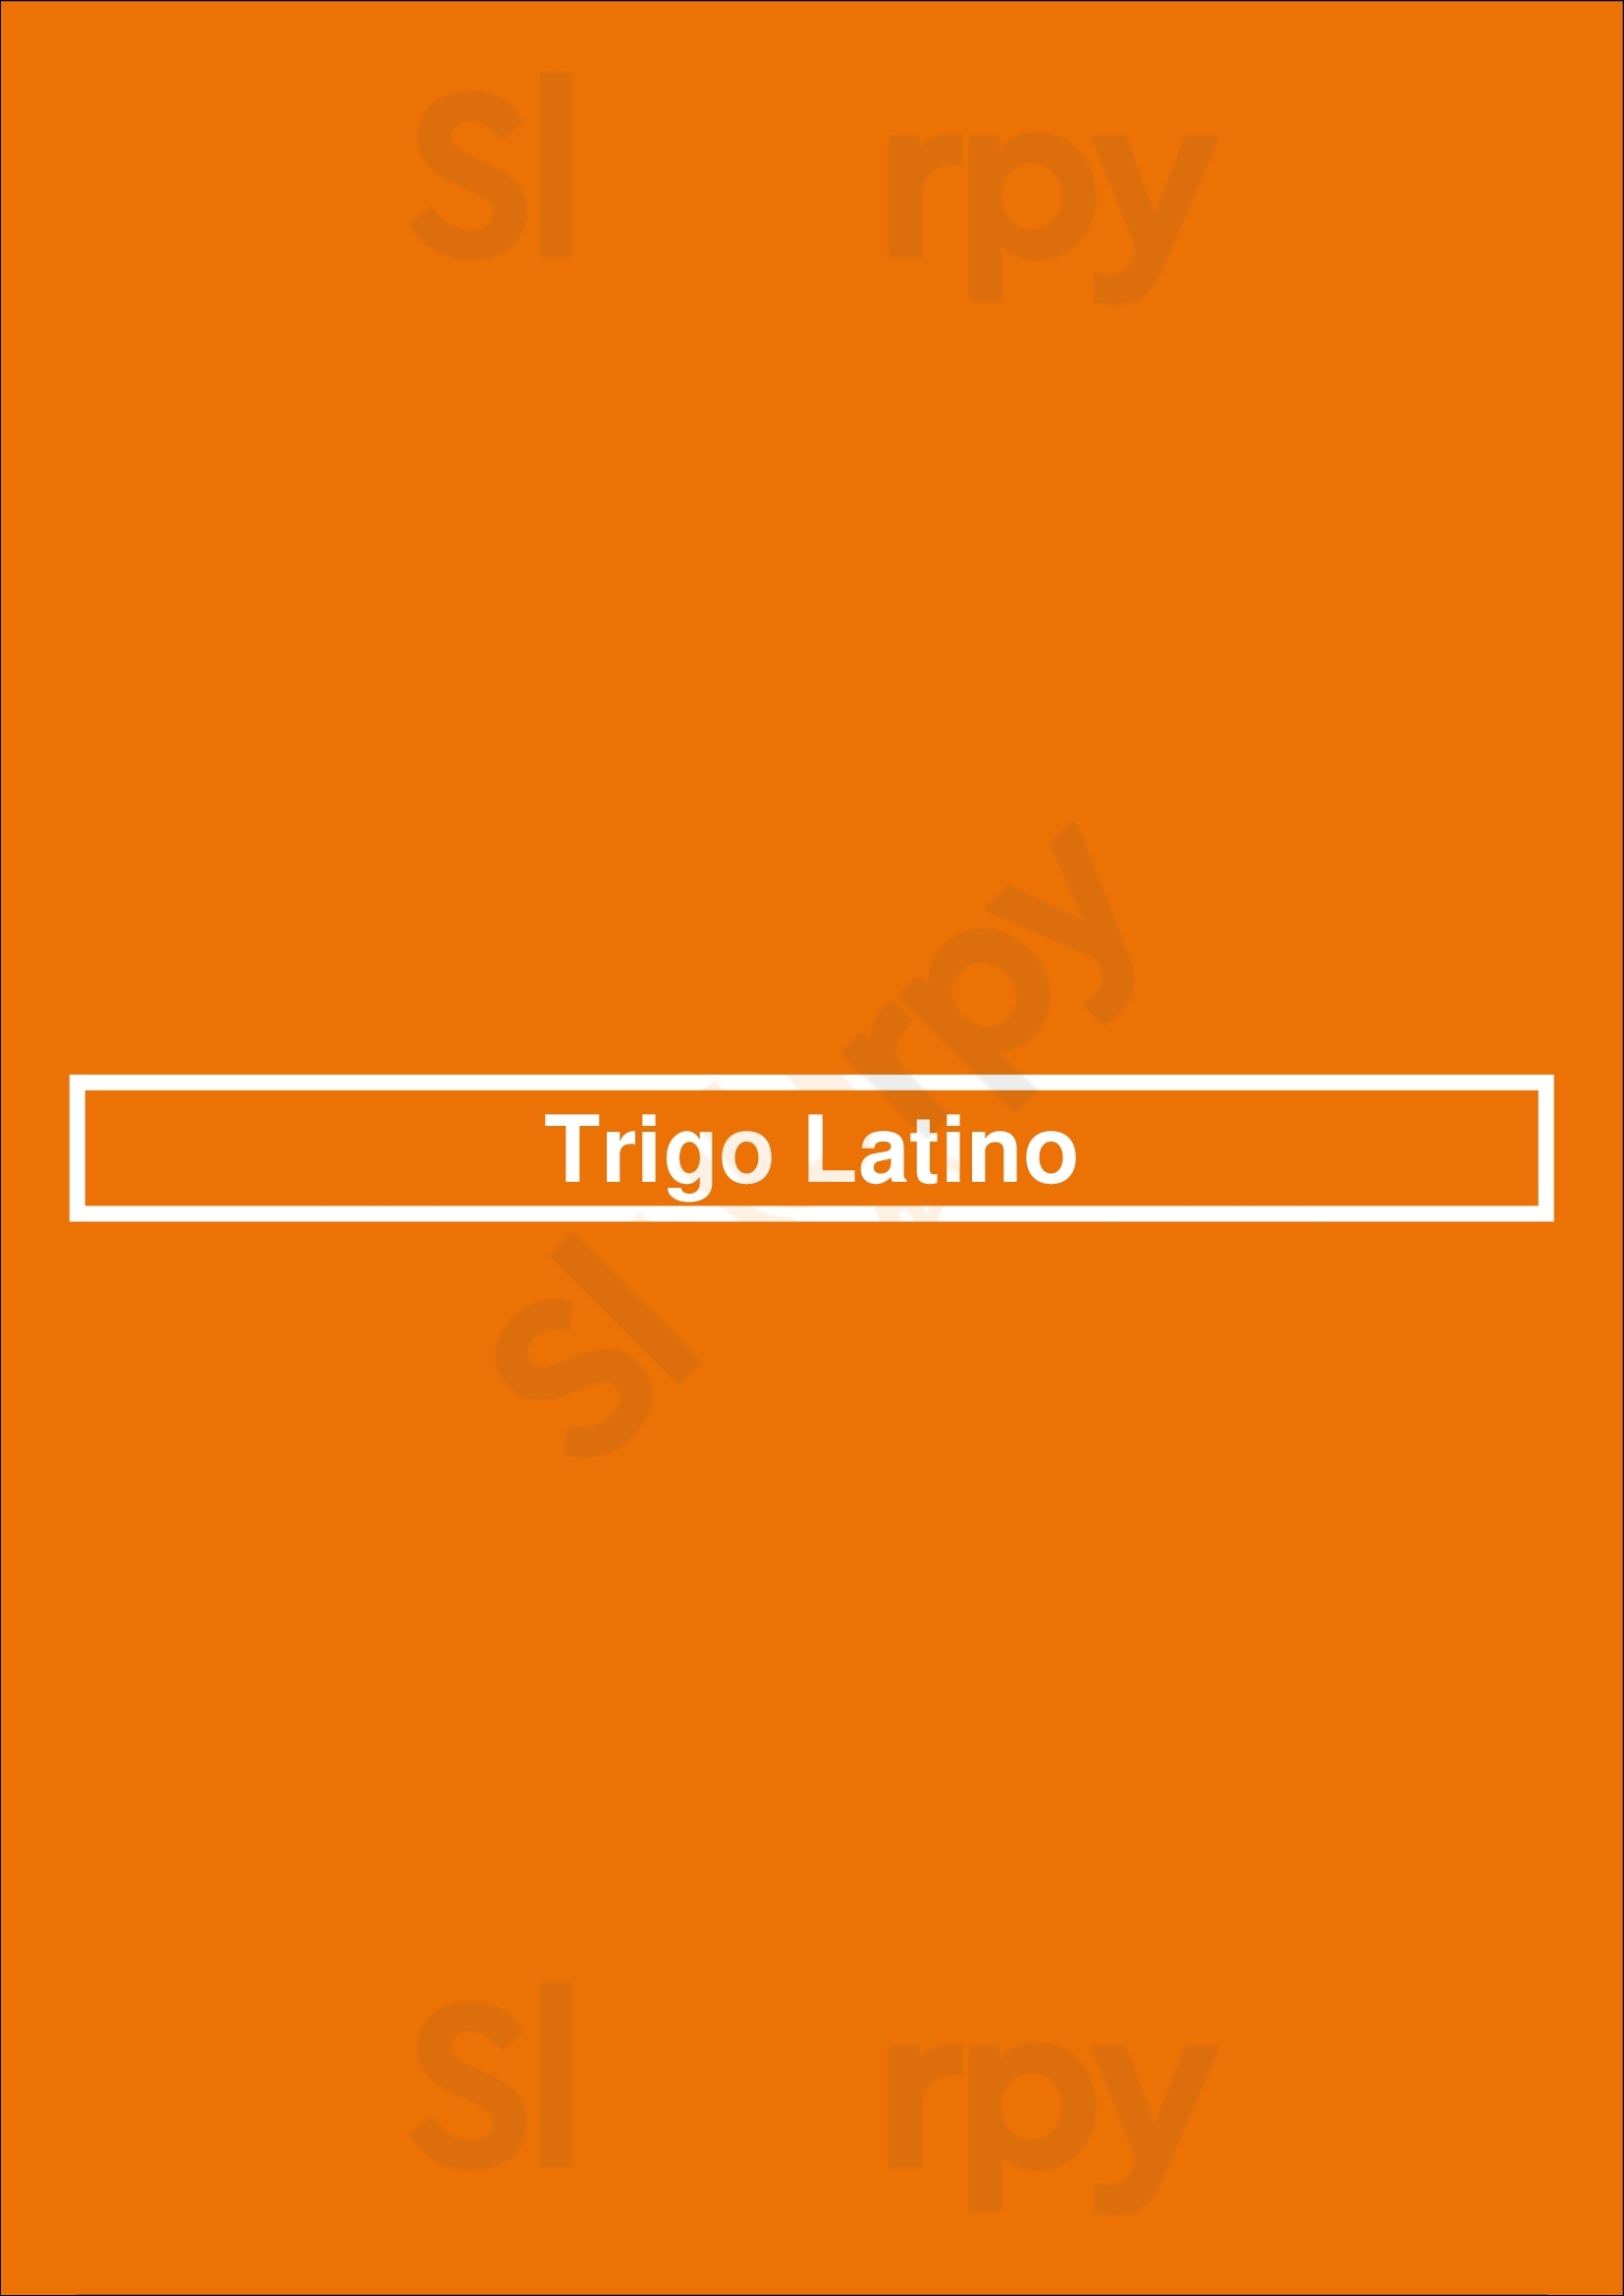 Trigo Latino Lisboa Menu - 1